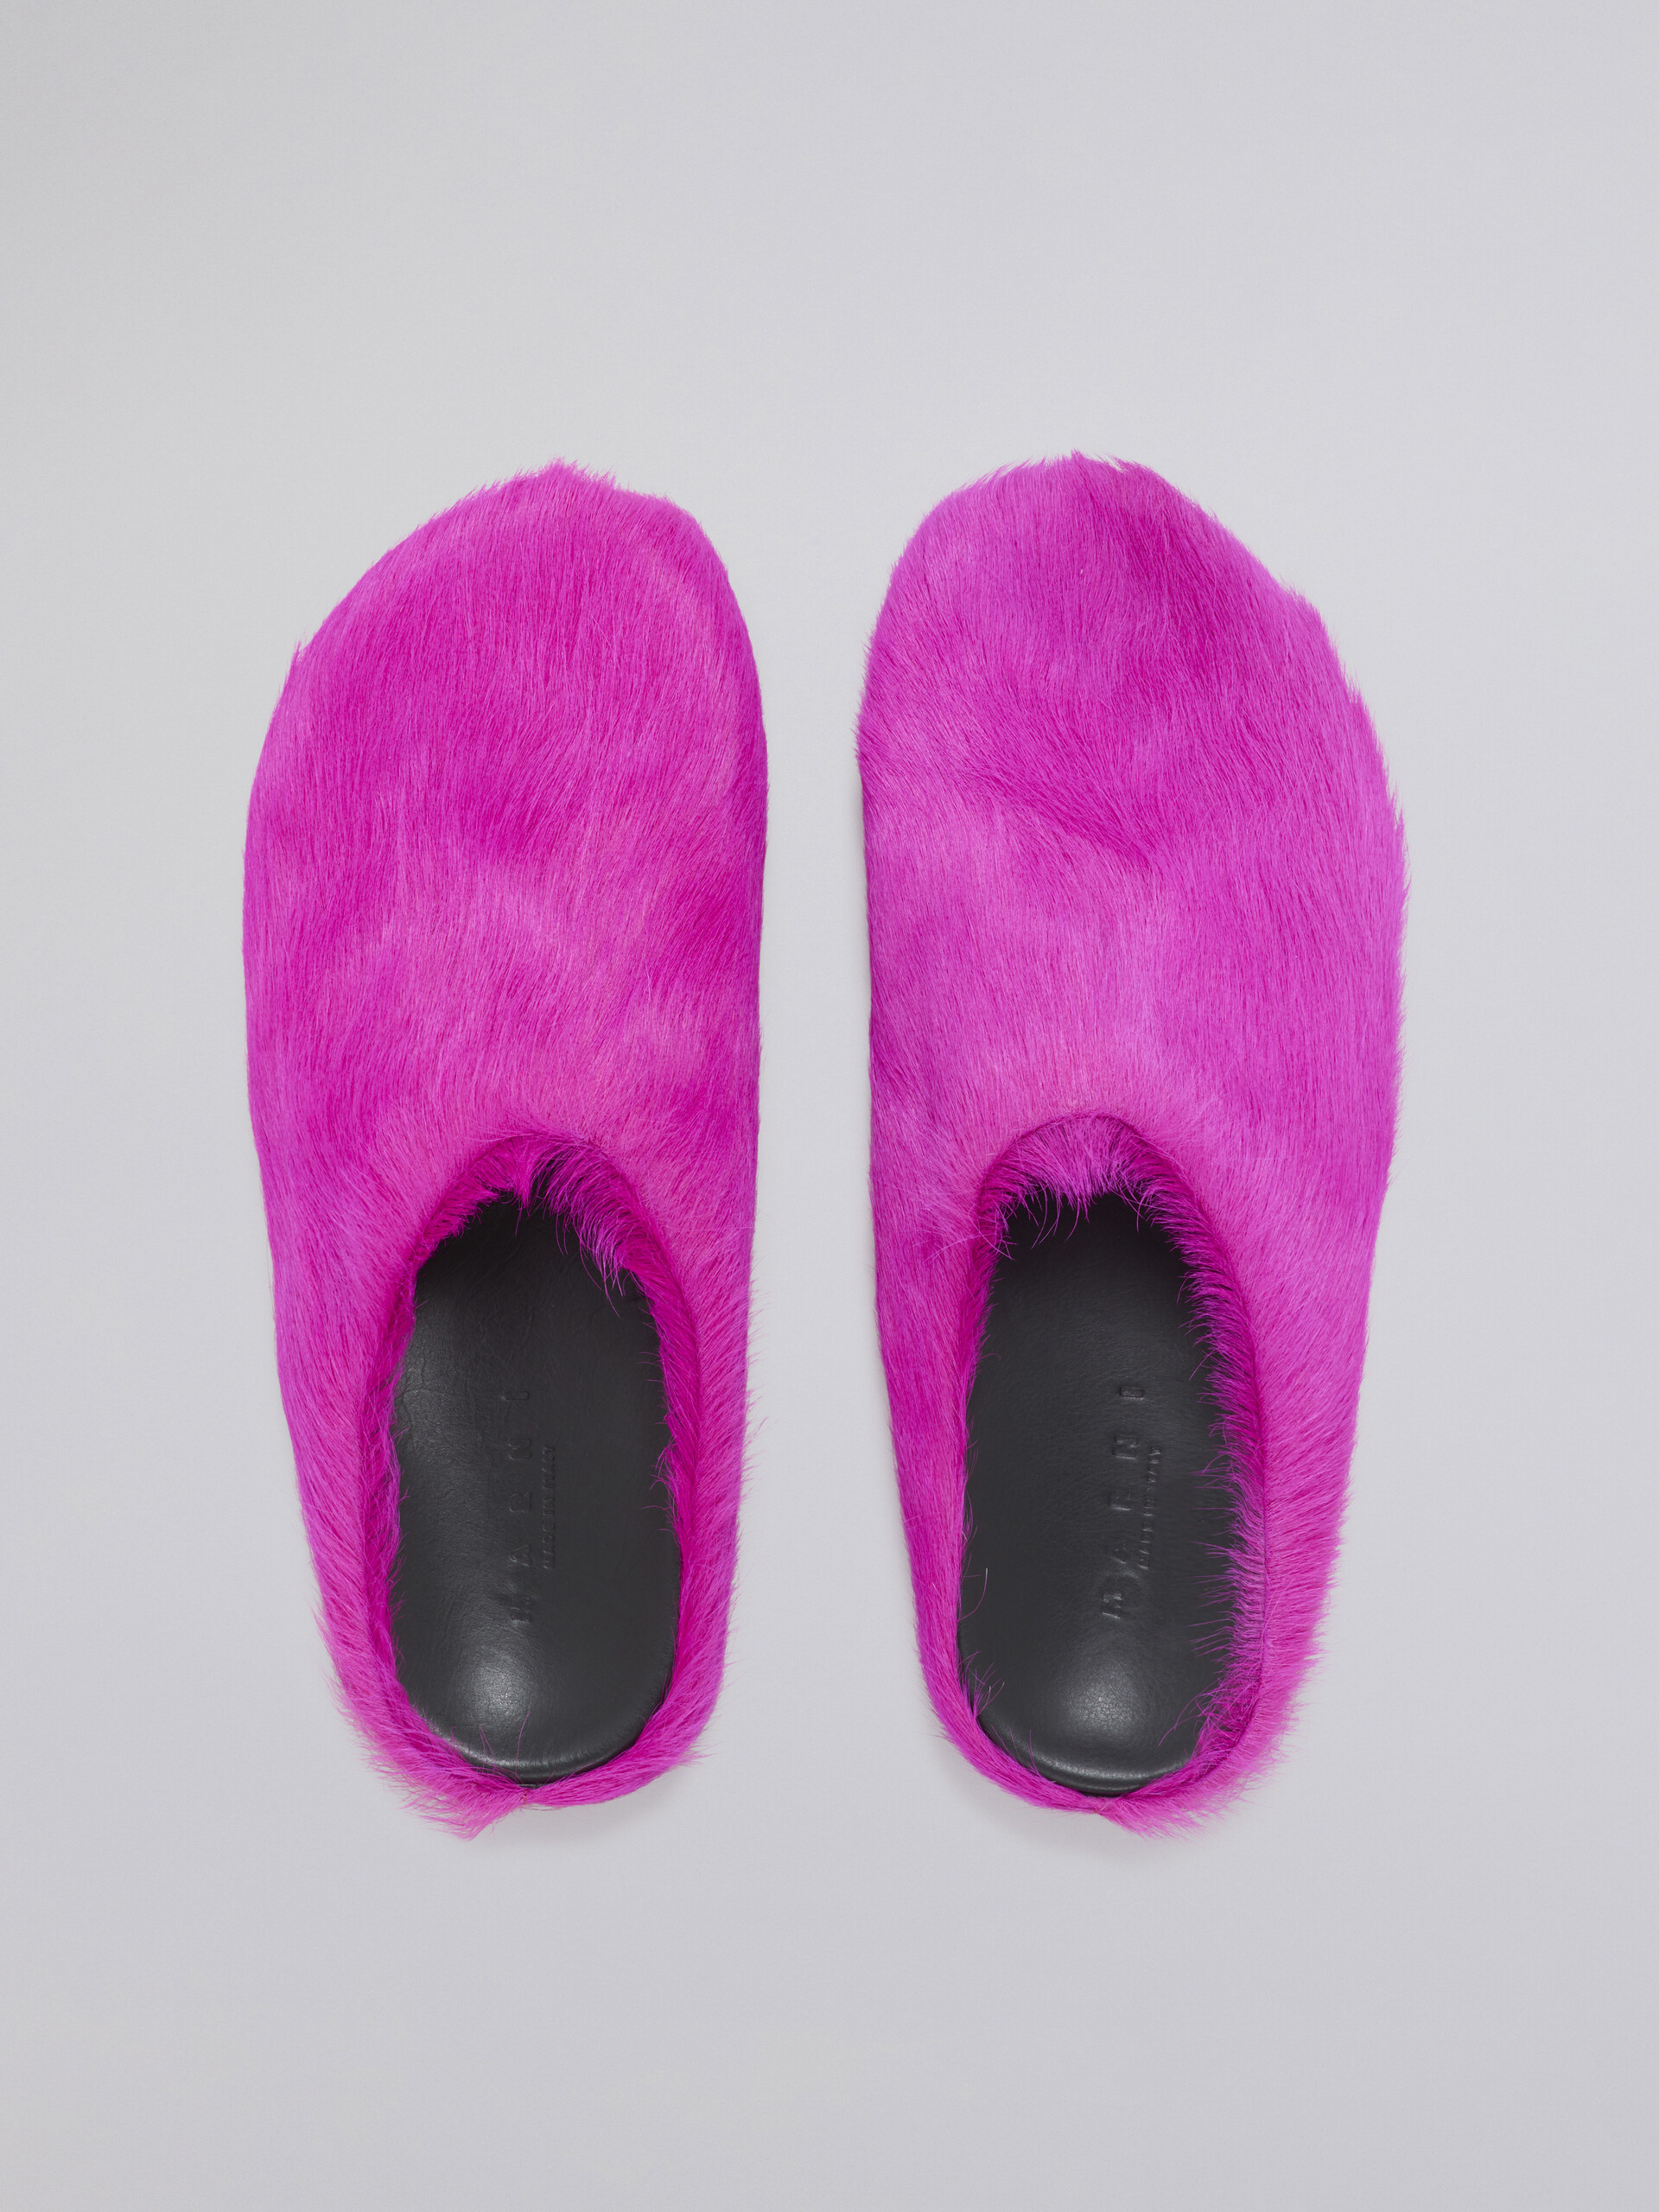 Pinkfarbene Fußbett-Sabots aus Kalbsfell - Holzschuhe - Image 4